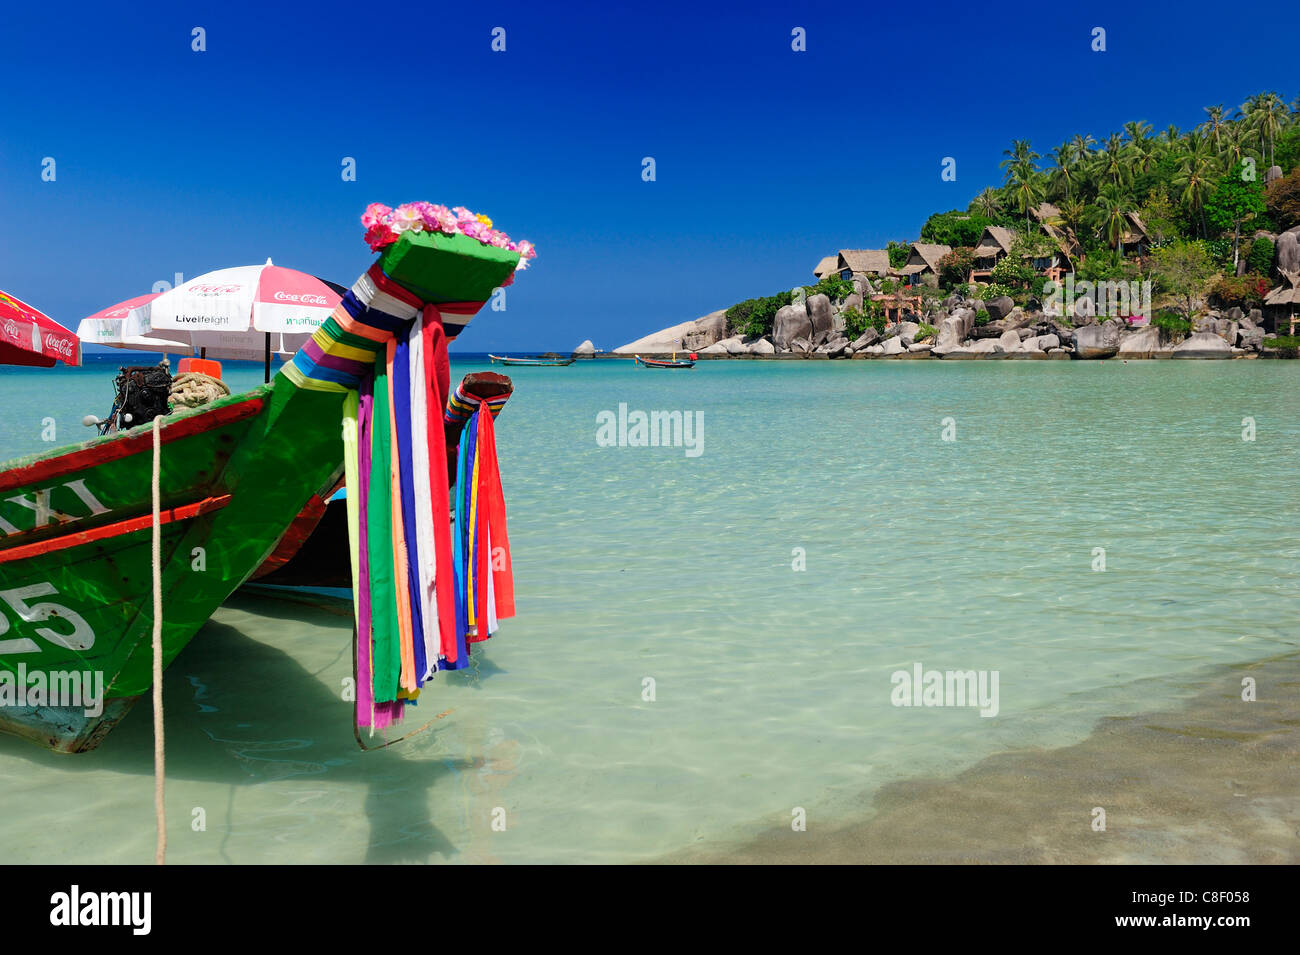 Longtail Boat, boat, Sai Ree, Beach, Koh Tao, Thailand, Asia, Stock Photo